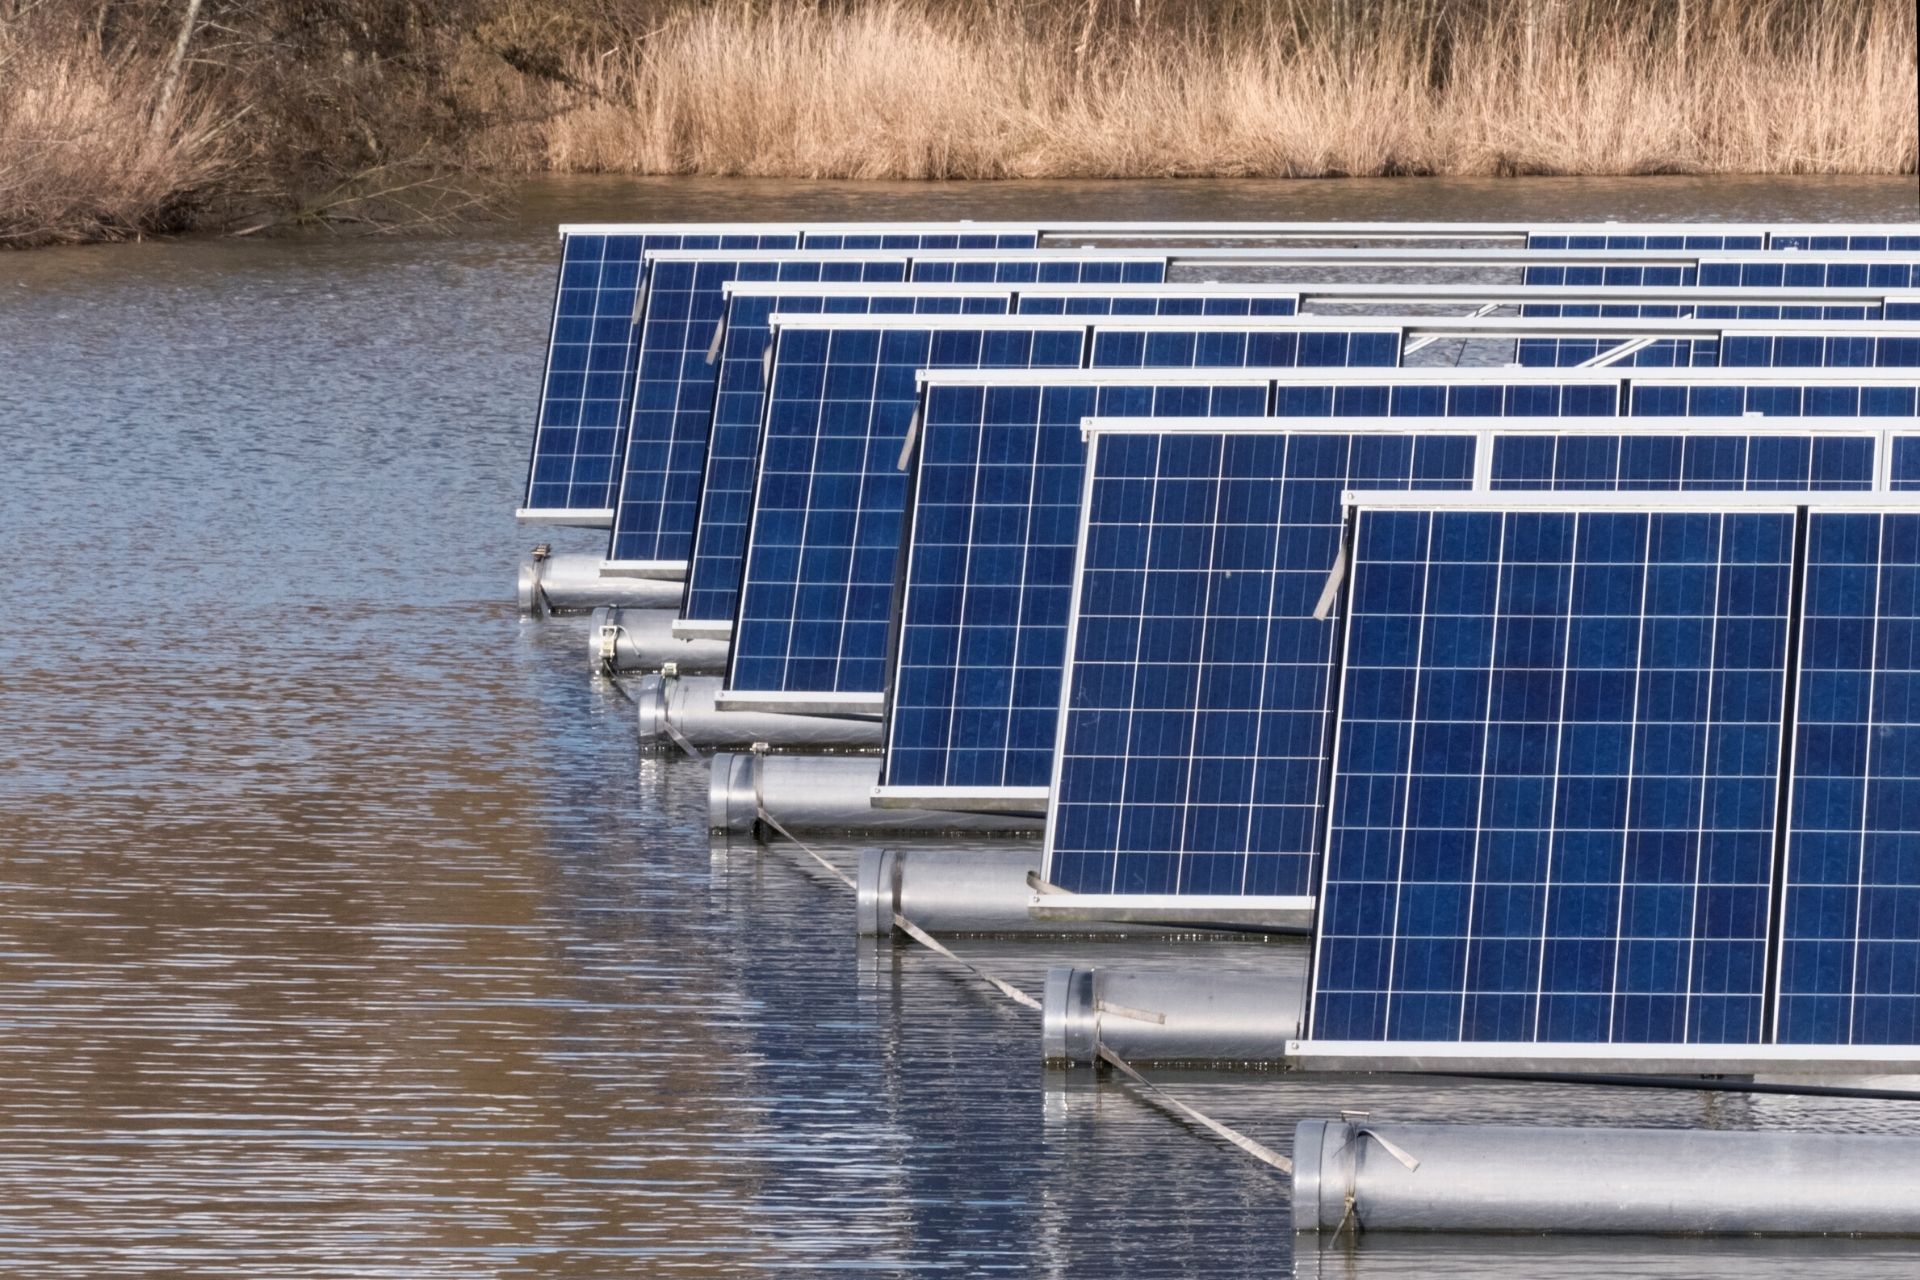 Panouri solare plutitoare – viitorul energiei verzi